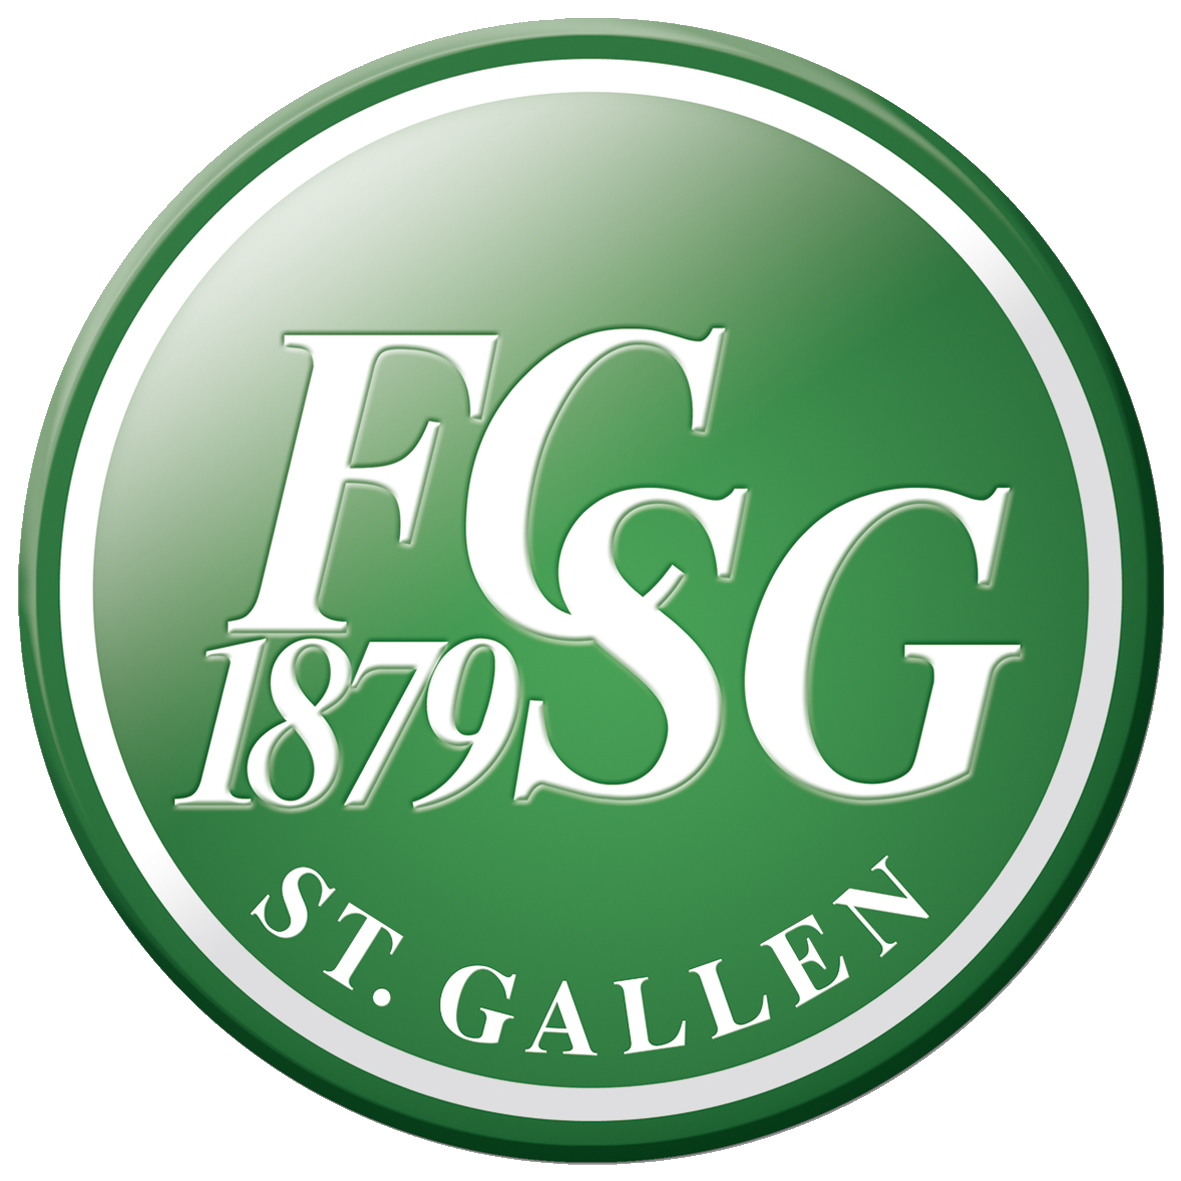 St Gallen Fußball